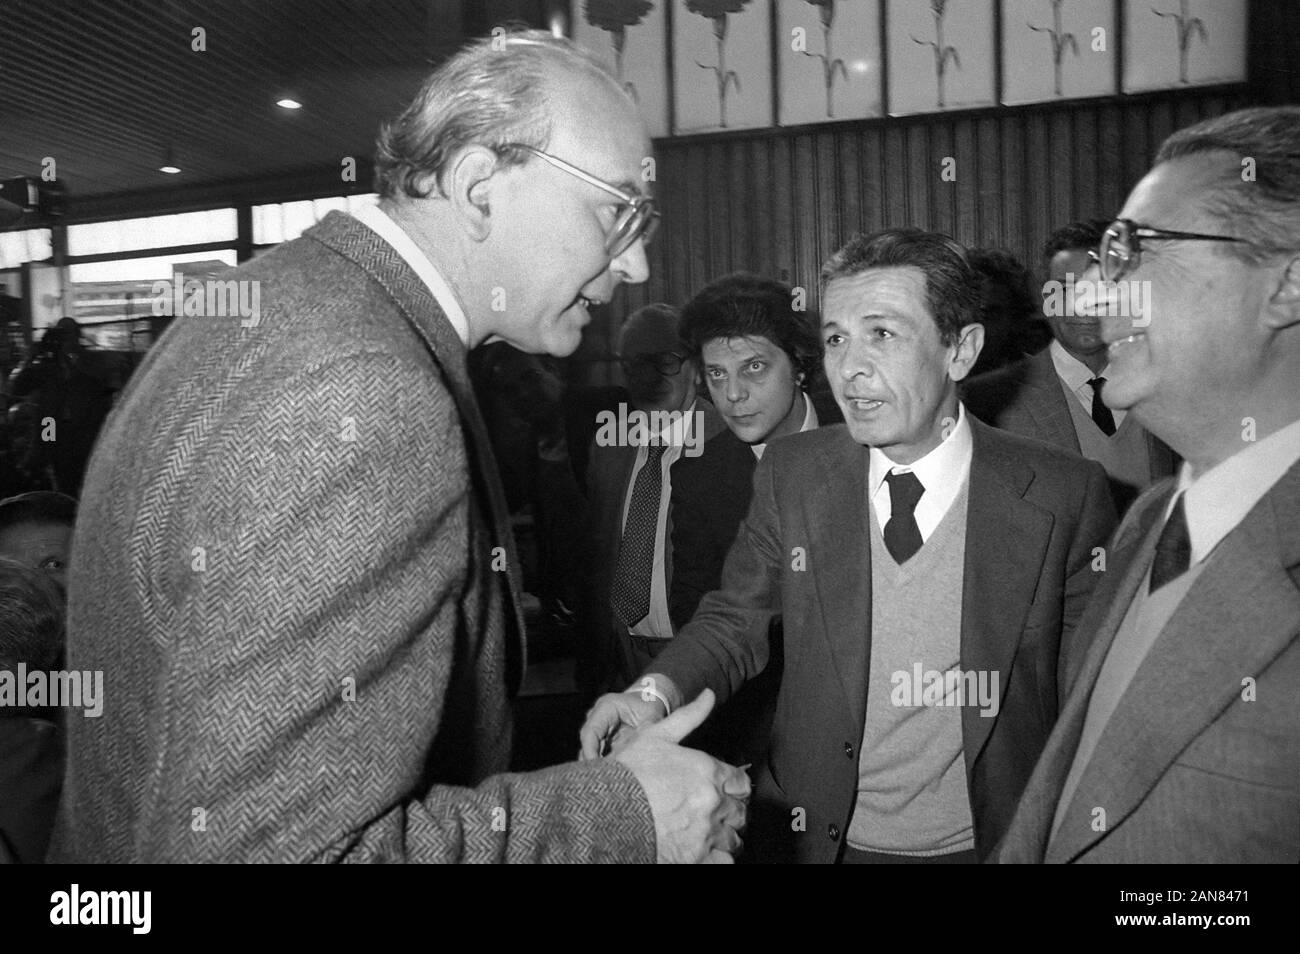 Palermo, aprile 1981, XLII Congresso del PSI (Partito Socialista Italiano), il segretario Bettino Craxi con Enrico Berlinguer e Armando Cossutta (PCI, Partito Comunista Italiano) Foto Stock